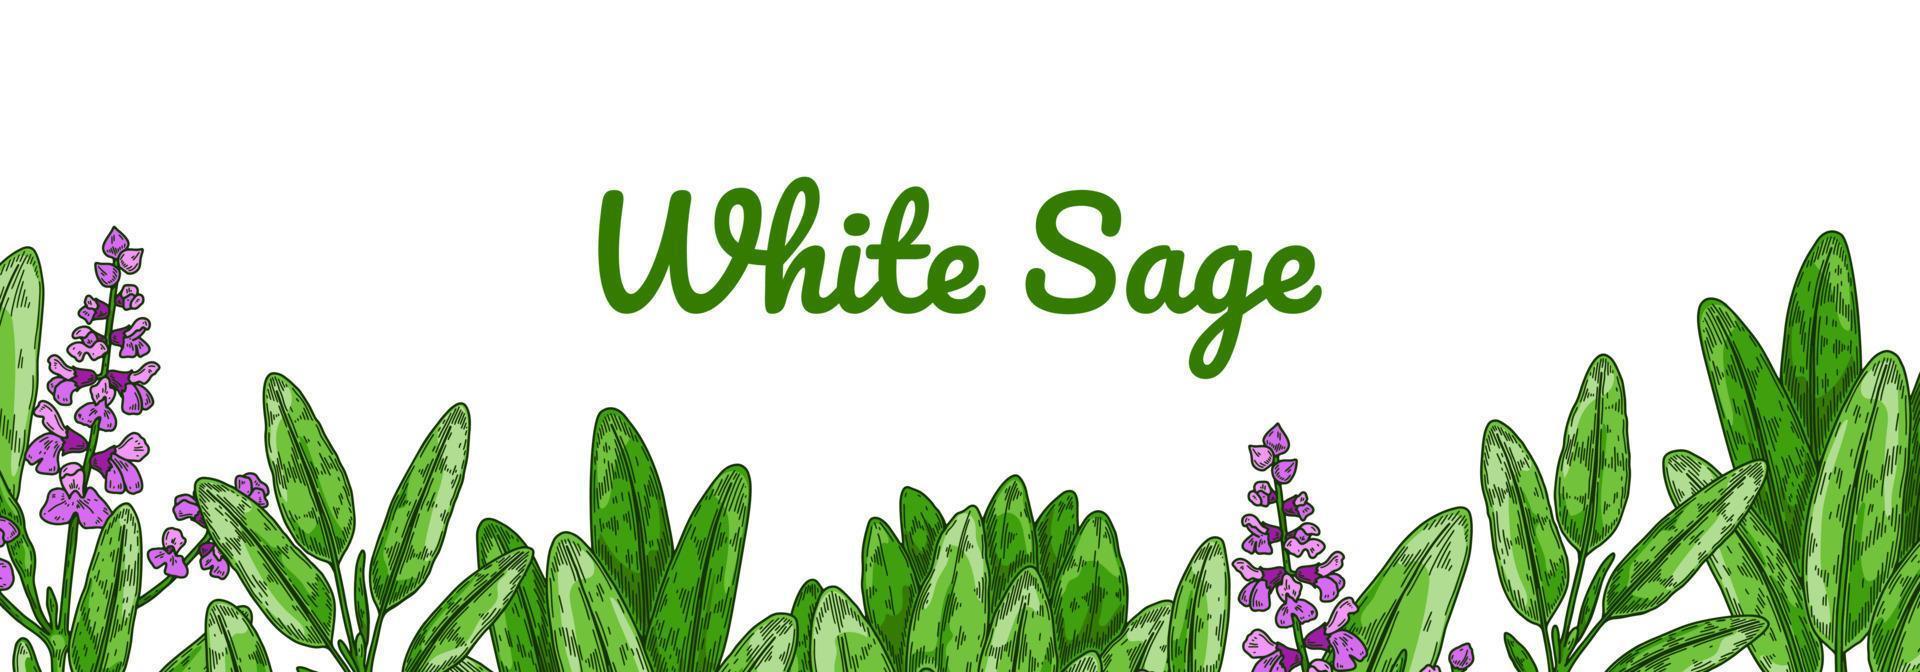 färgglad salvia design med gröna blad och blommor. vektor illustration i färgad skiss stil